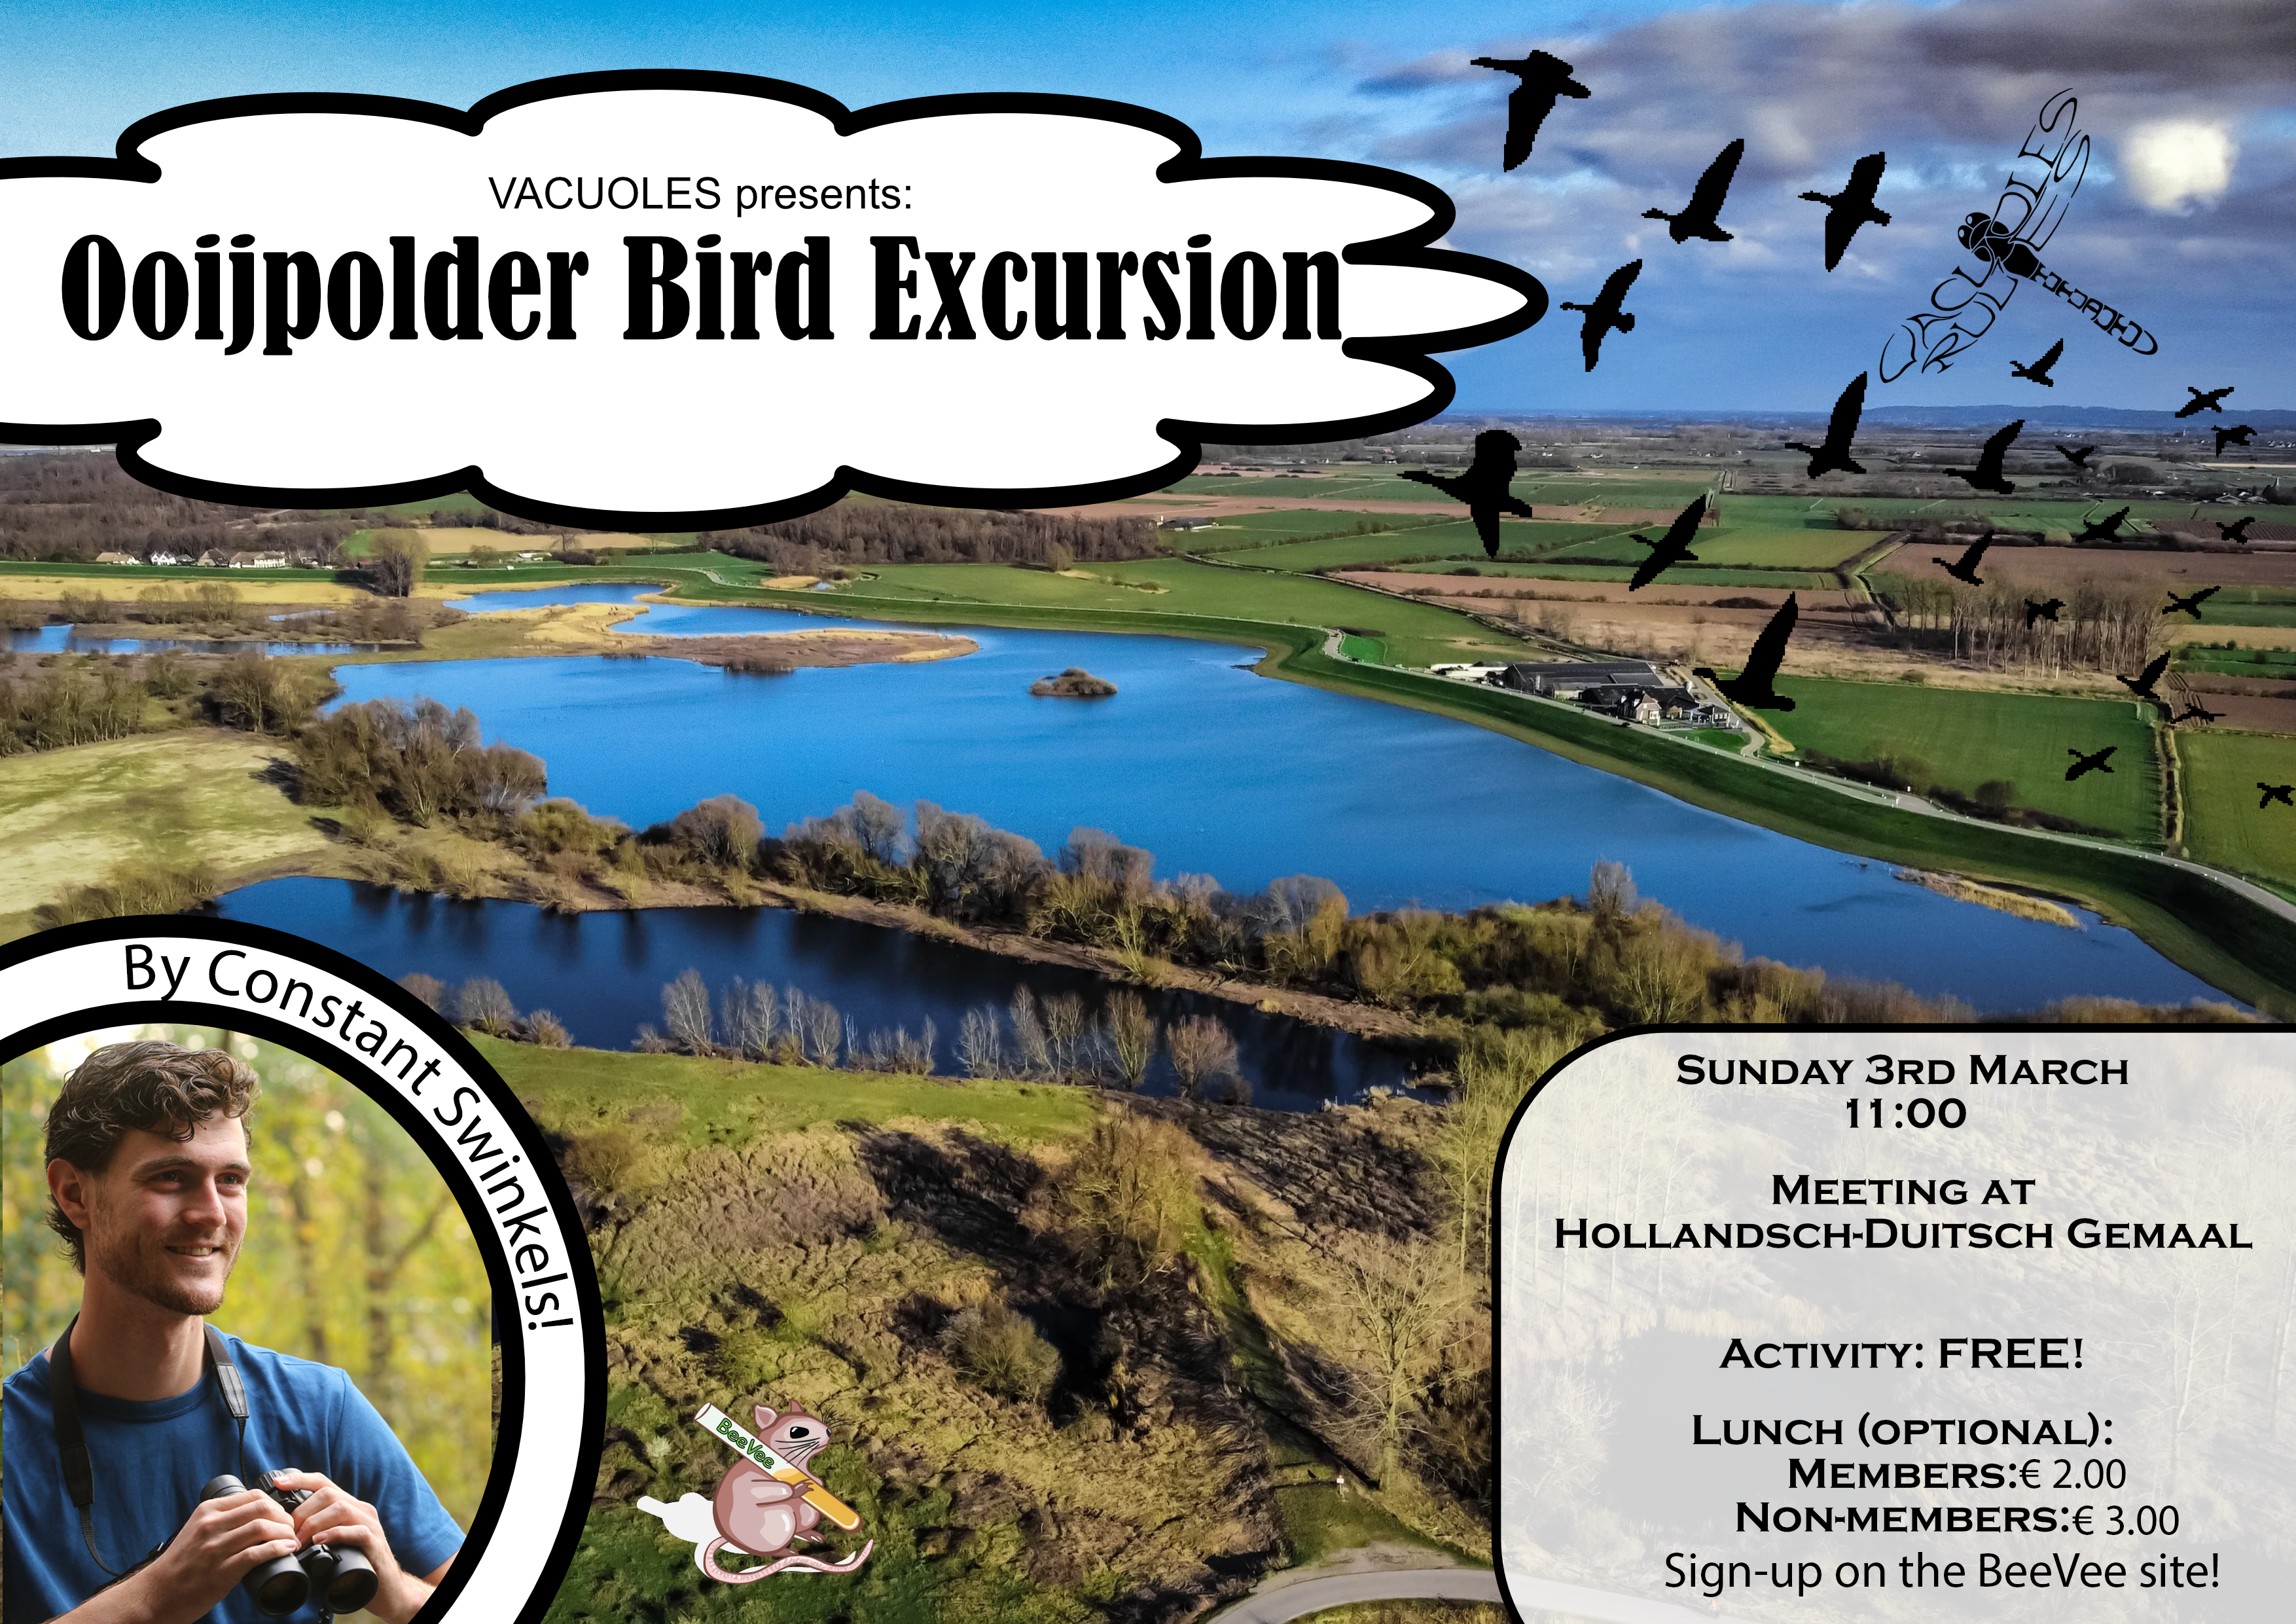 Ooijpolder Bird Excursion